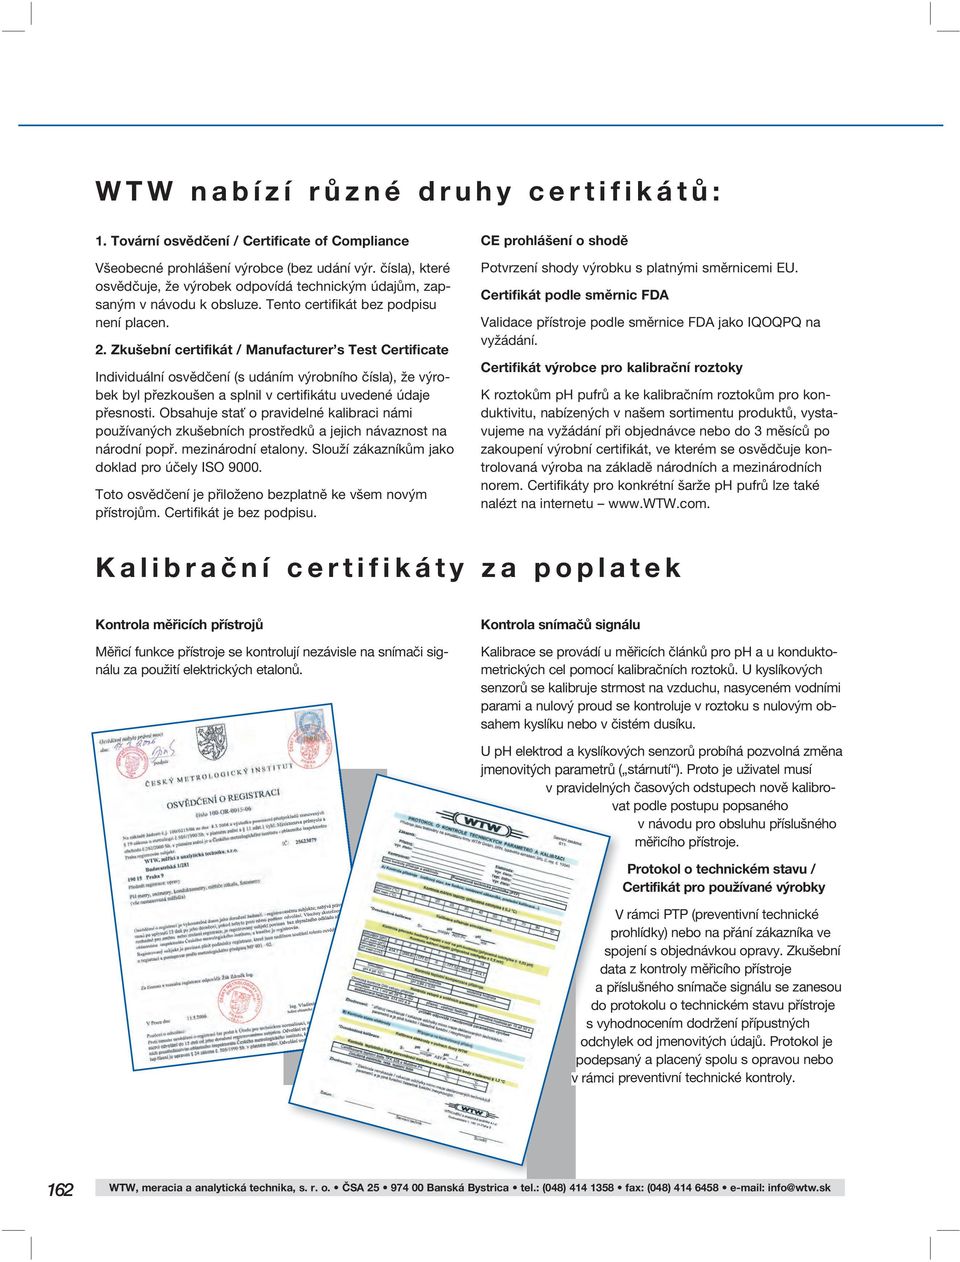 Zkušební certifikát / Manufacturer s Test Certificate Individuální osvědčení (s udáním výrobního čísla), že výrobek byl přezkoušen a splnil v certifikátu uvedené údaje přesnosti.